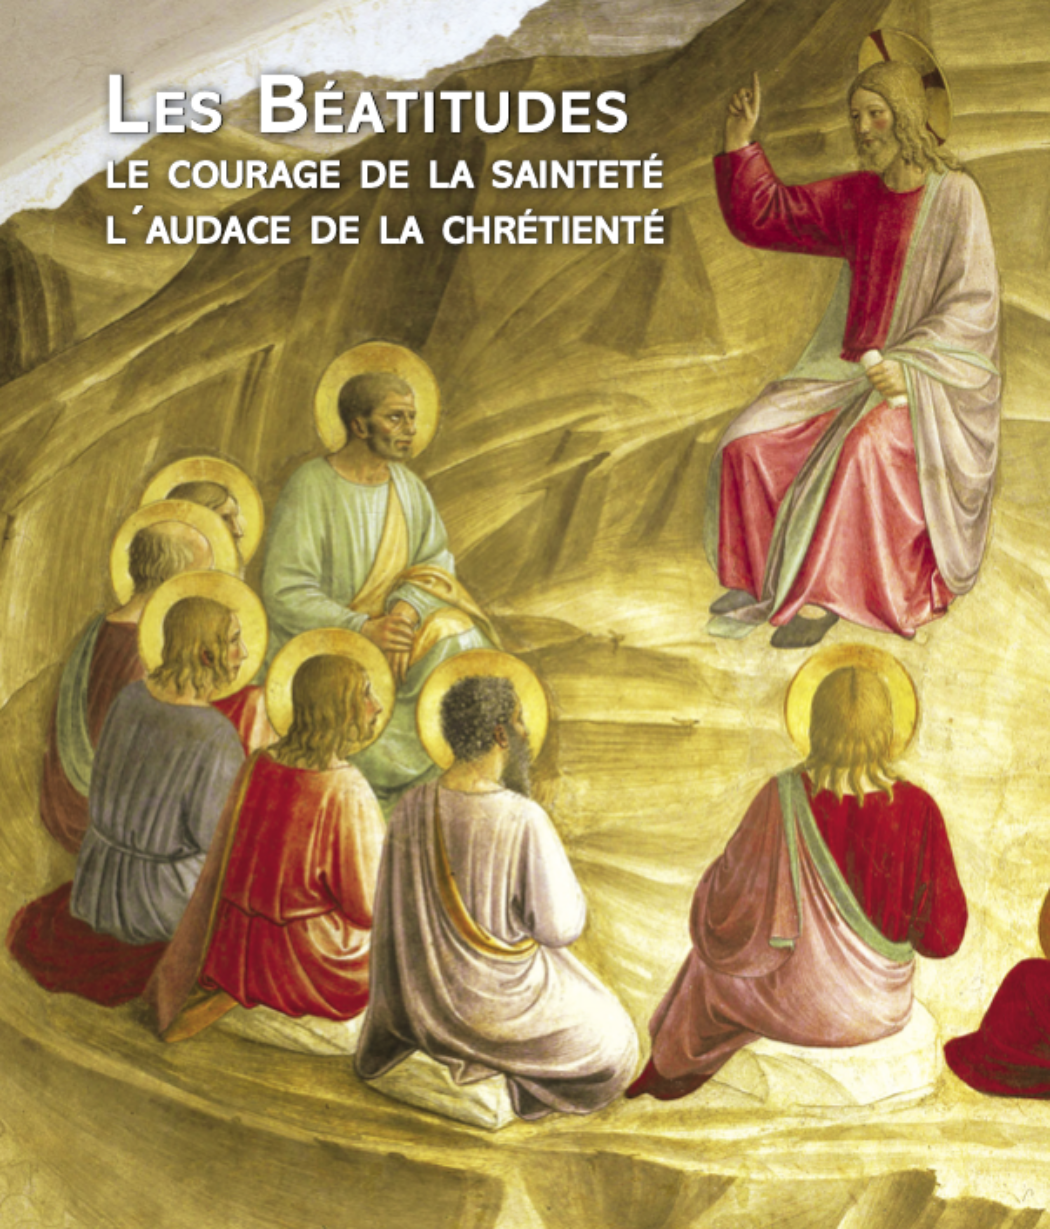 Les pèlerins de Chartres à Paris marcheront sous le thème des Béatitudes, le courage de la sainteté, l’audace de la chrétienté